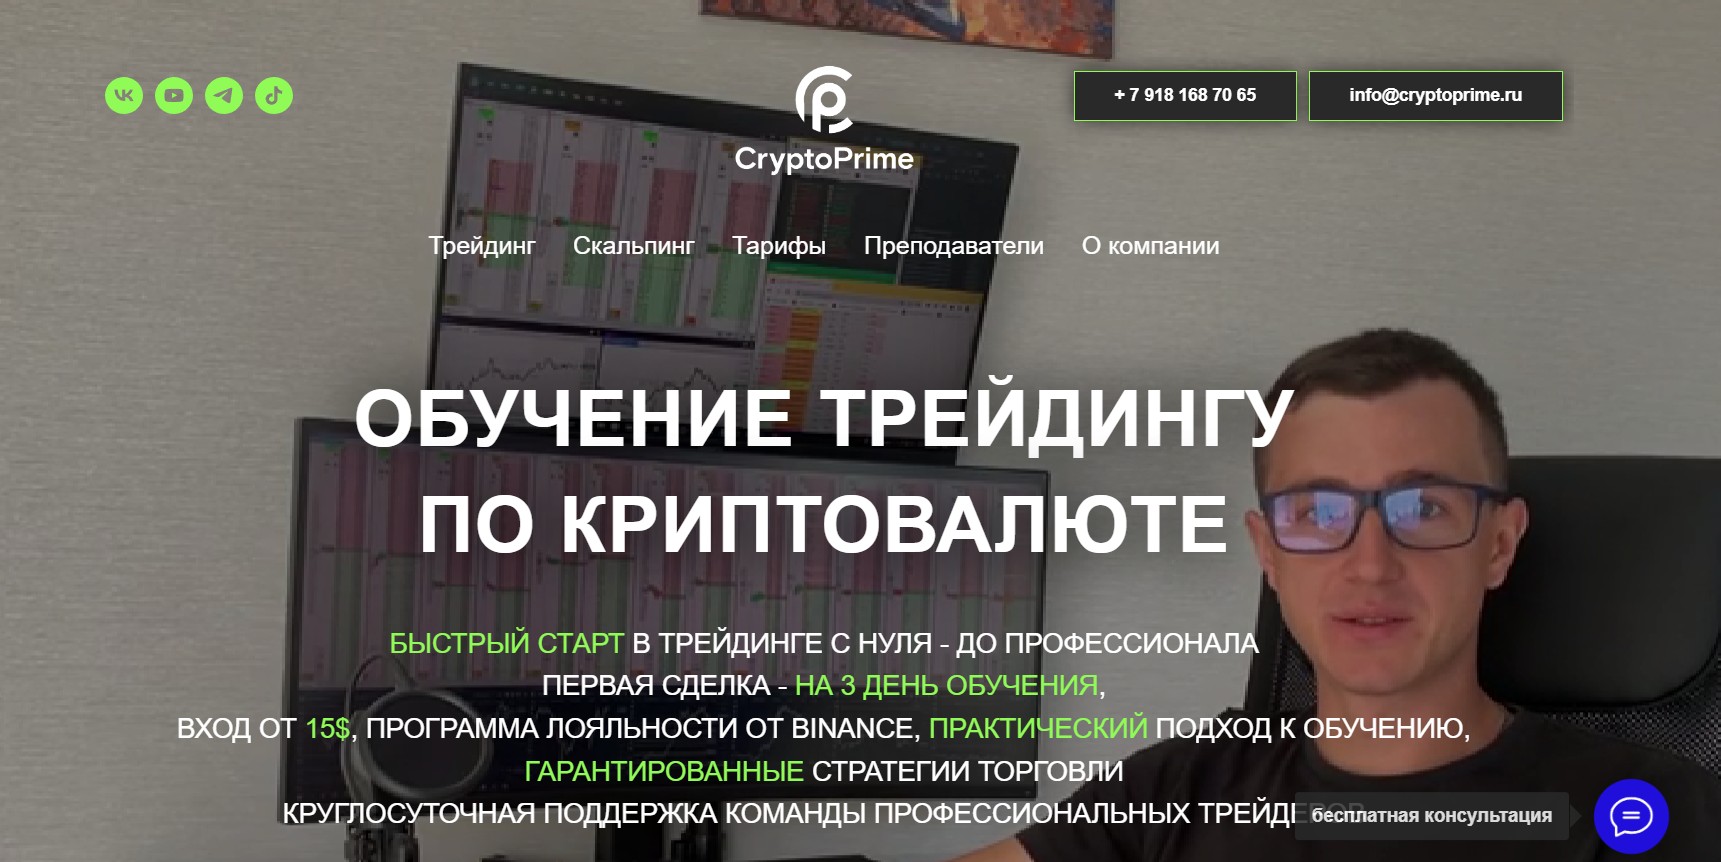 Обзор проекта КриптоПрайм